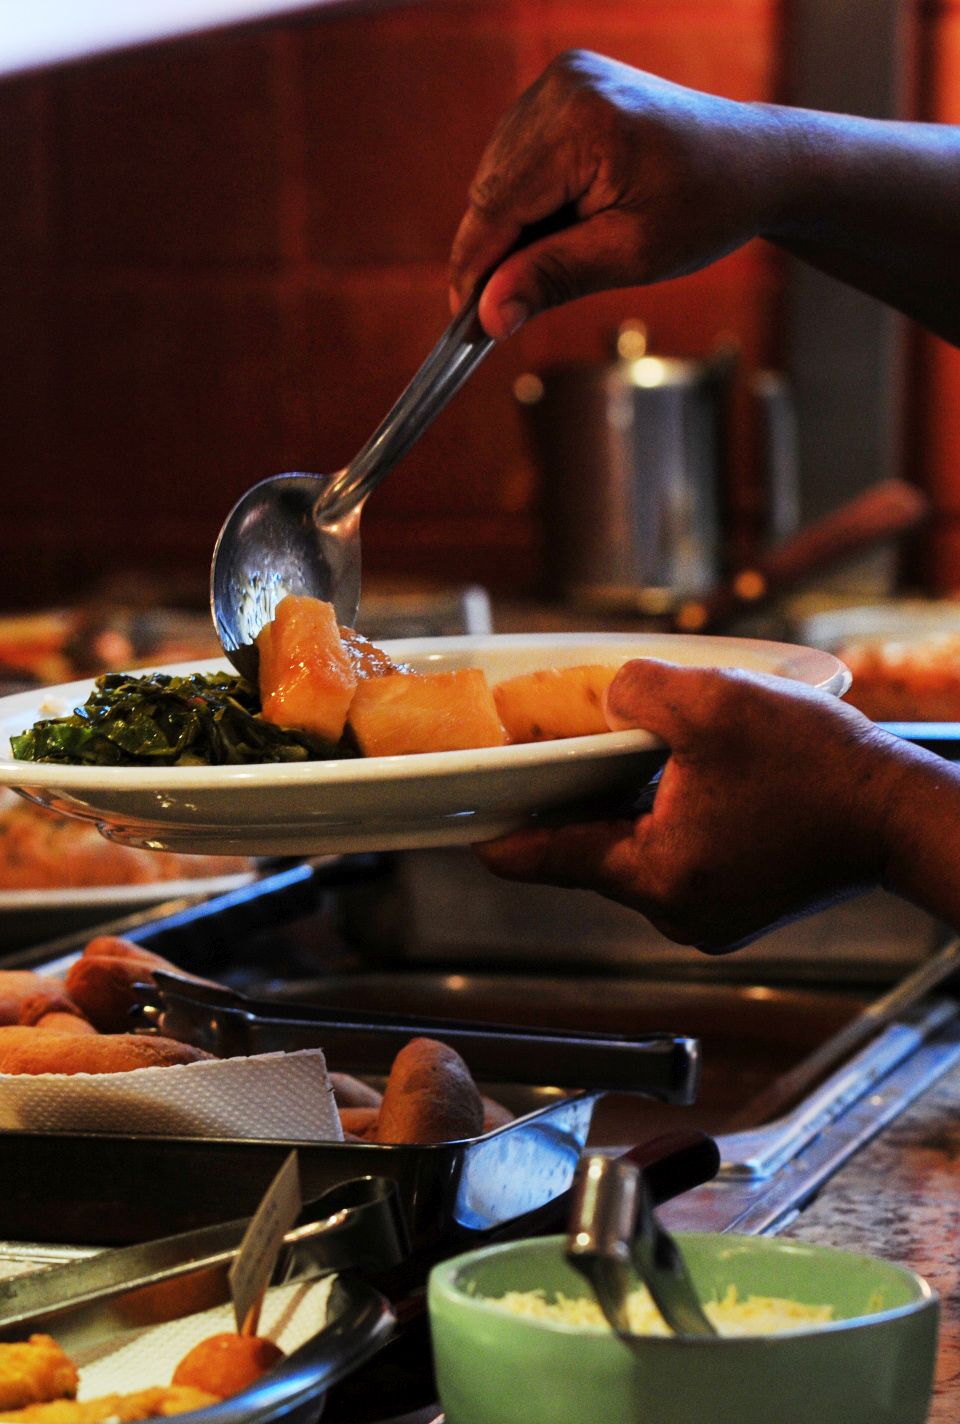 Foto tirada em restaurante mostra uma pessoa se servindo com detalhe nas mãos e no prato